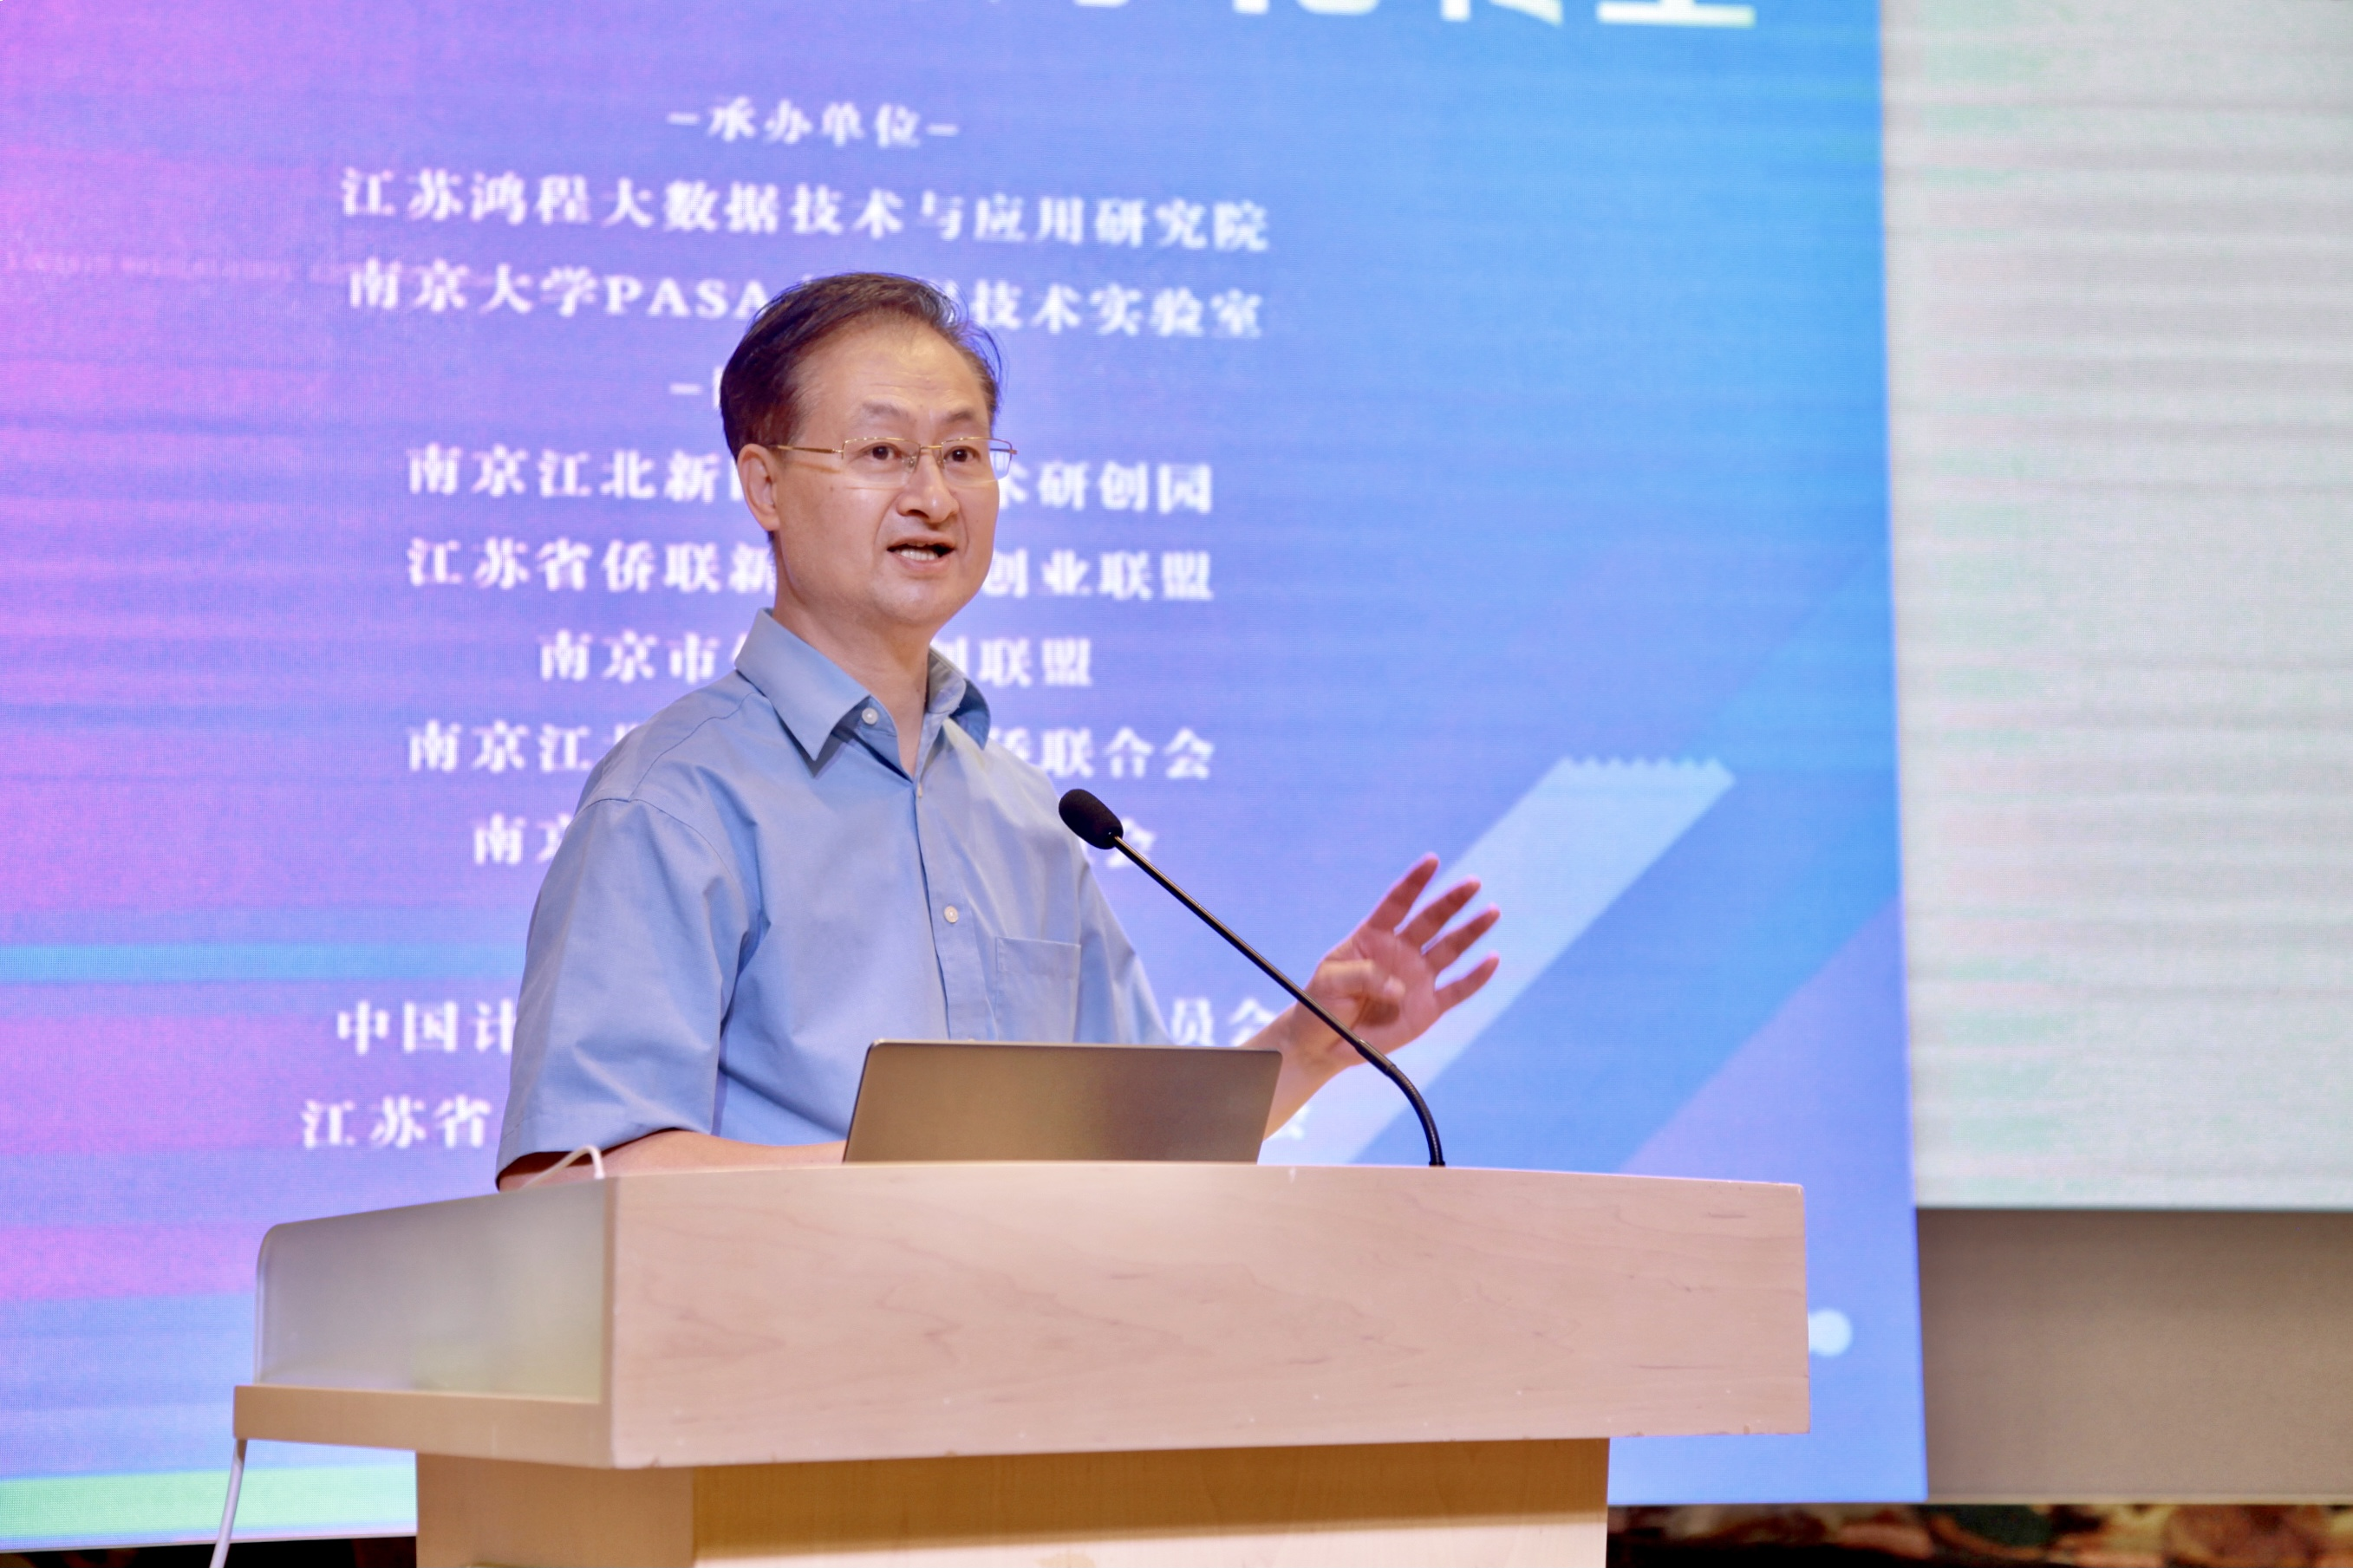 【2021南京创新周】江苏鸿程大数据研究院与省市区侨联组织联合举办“大数据驱动数字化转型”技术交流会